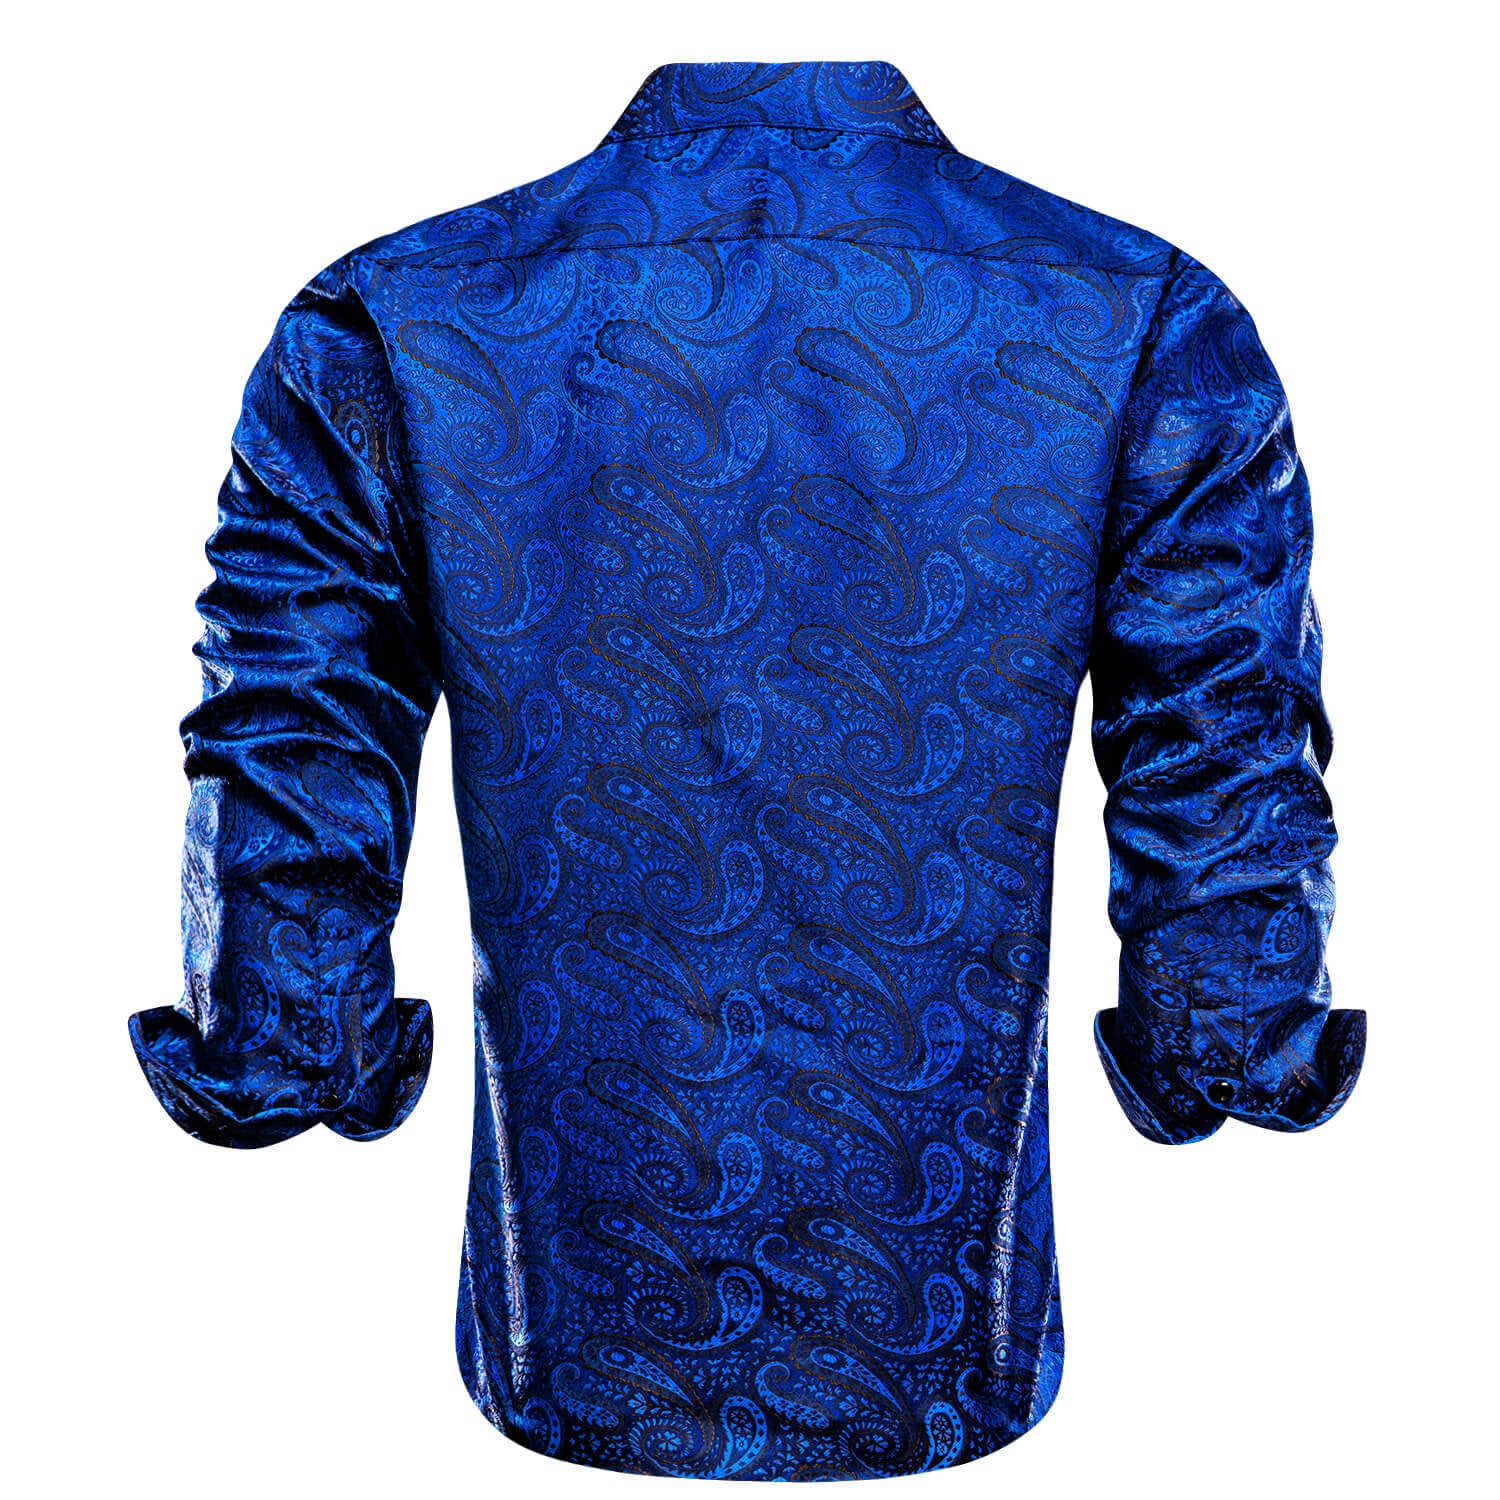 Hi-Tie Long Sleeve Shirt Cobalt Blue Woven Paisley Silk Shirt for Men